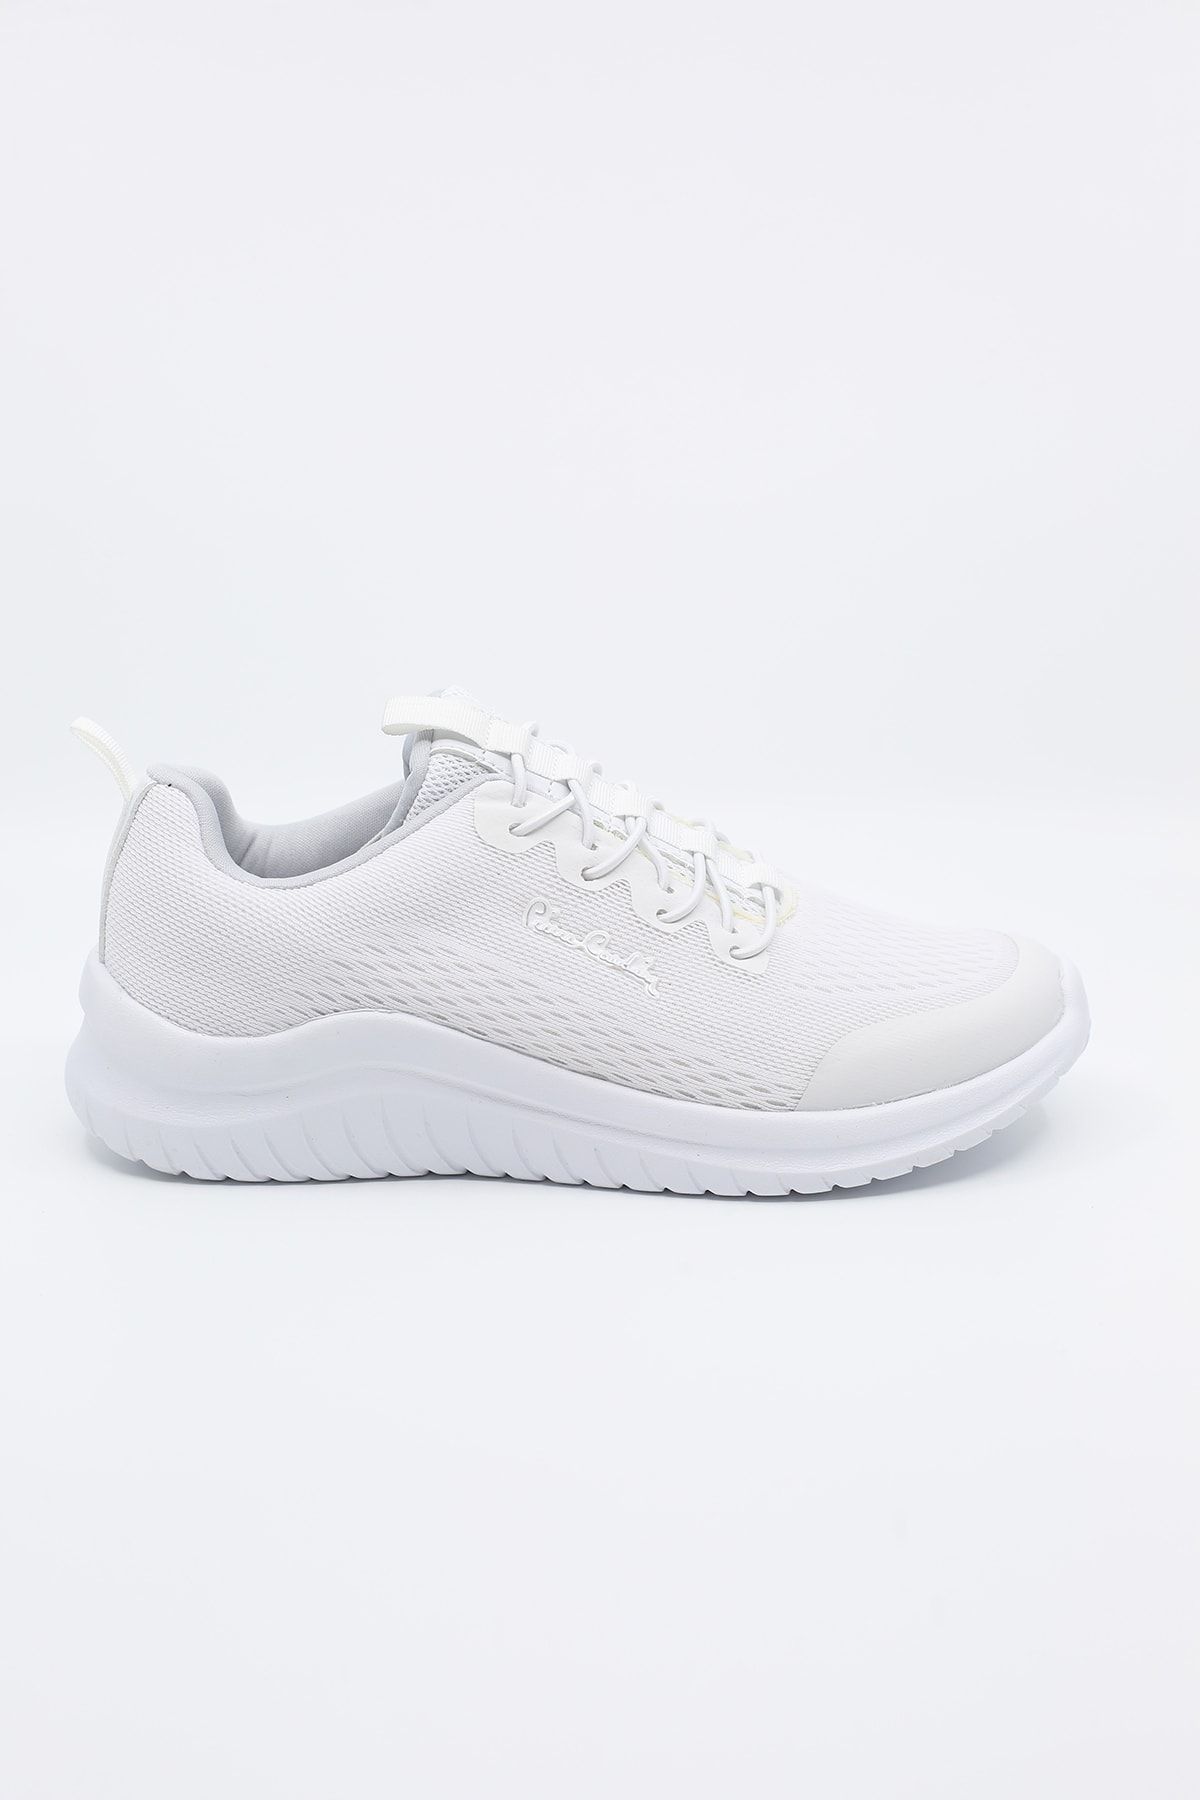 Pierre Cardin Kadın Spor Ayakkabı Pc-30555 Beyaz/white 21s0430555